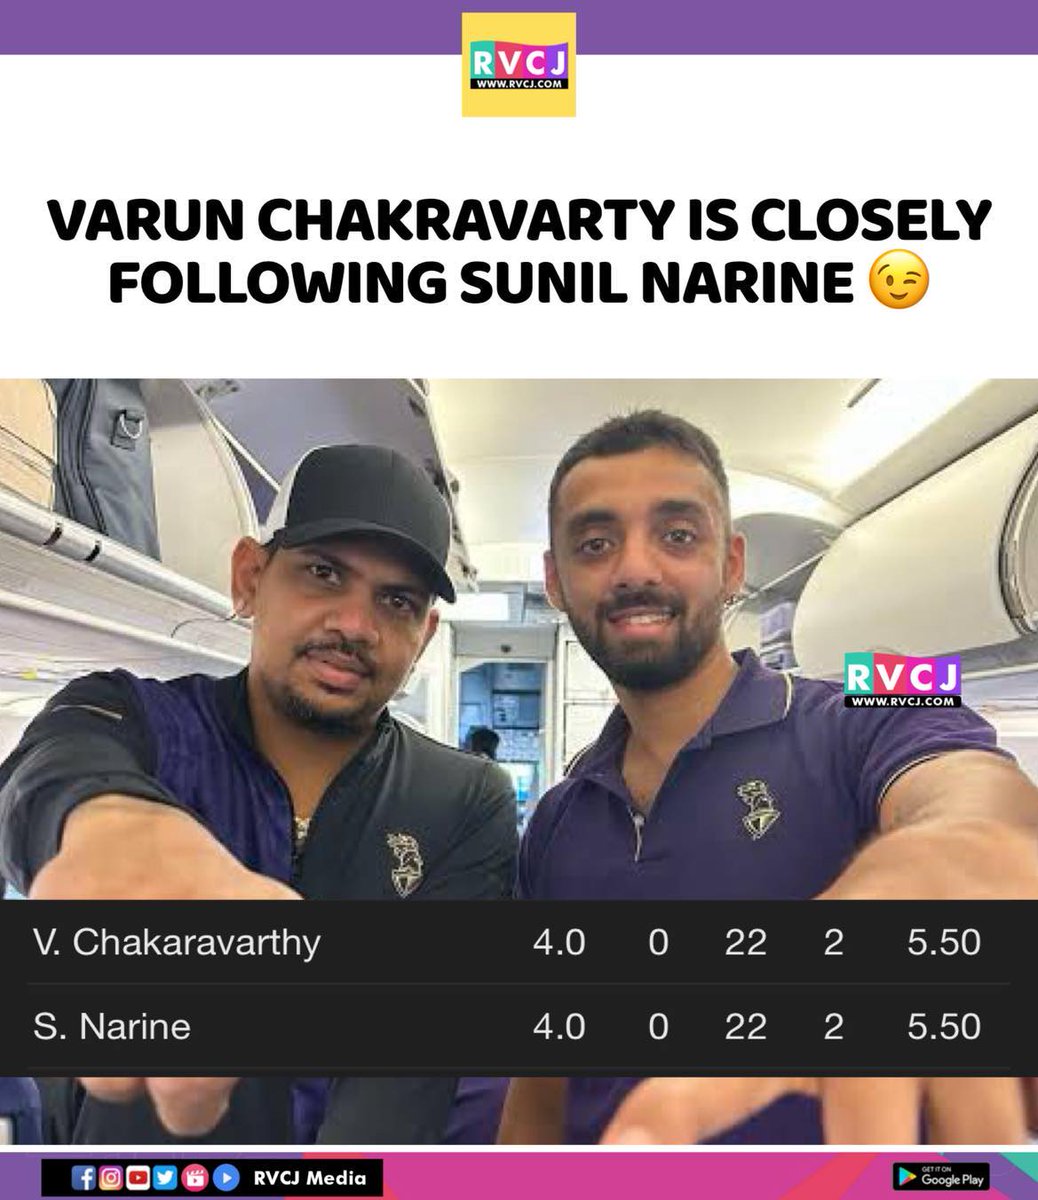 Varun chakravarthy
#varunchakravarthy 
#sunilnarine